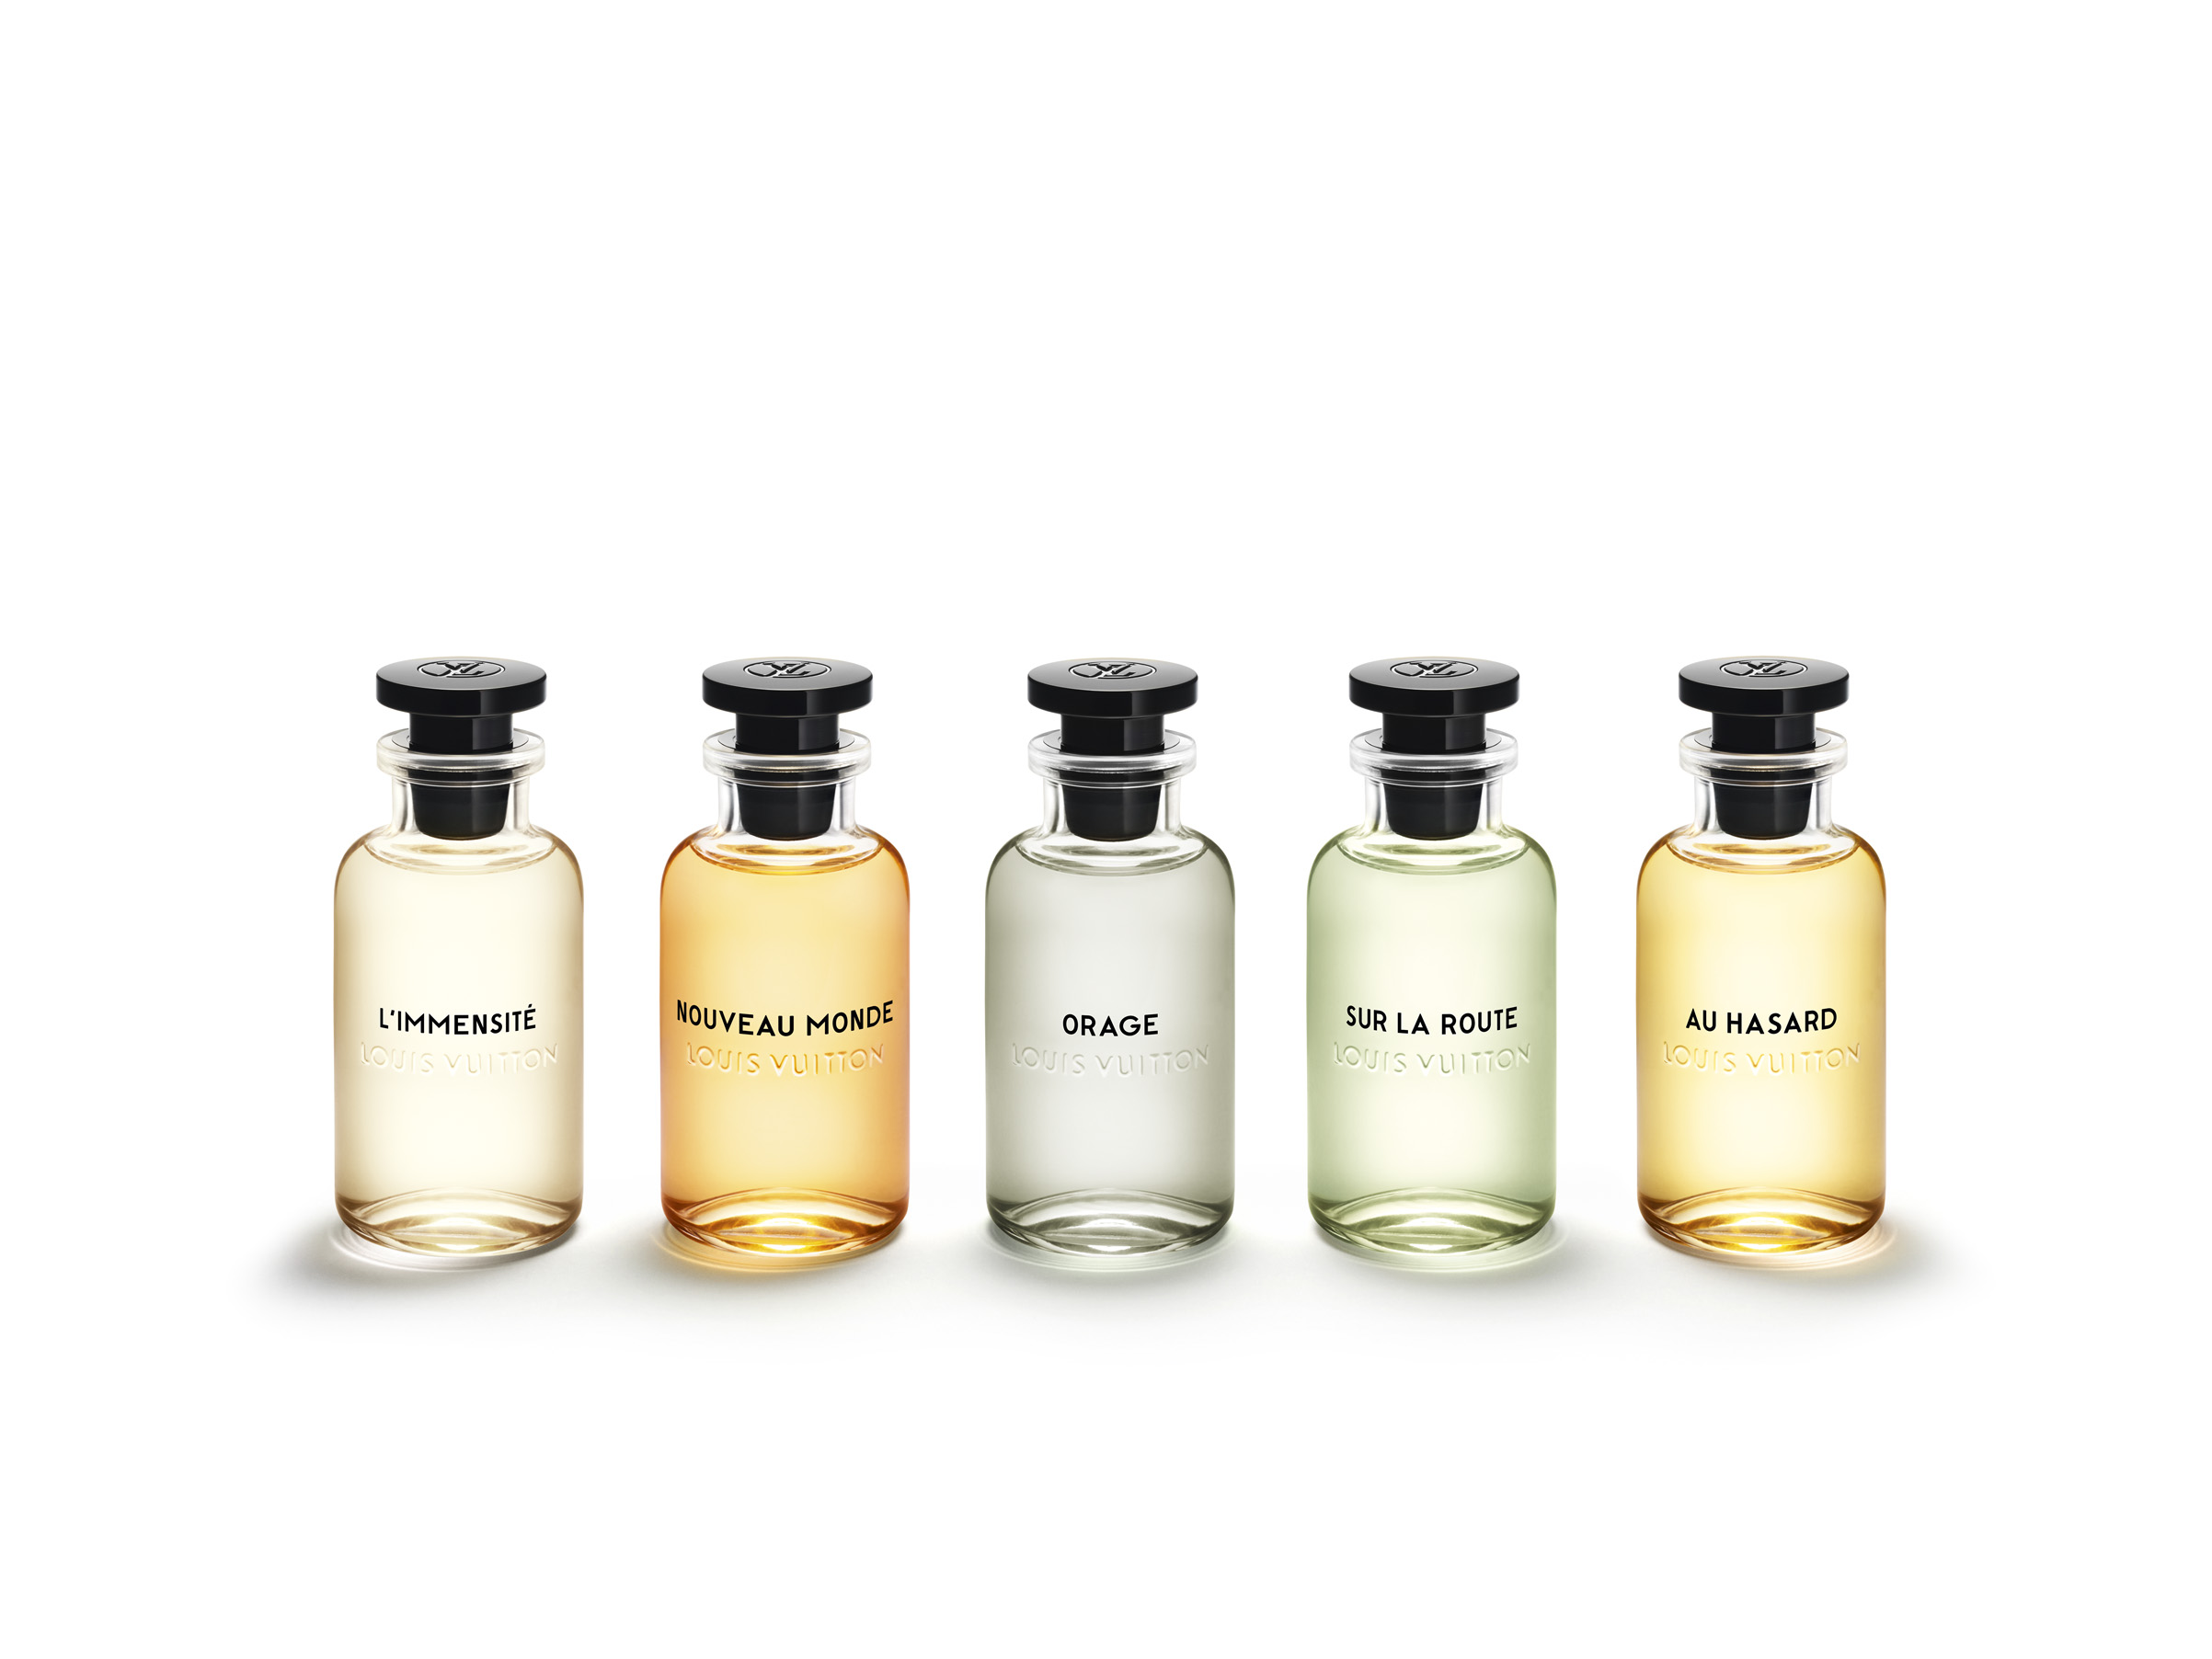 Orage Louis Vuitton Cologne - un parfum pour homme 2018